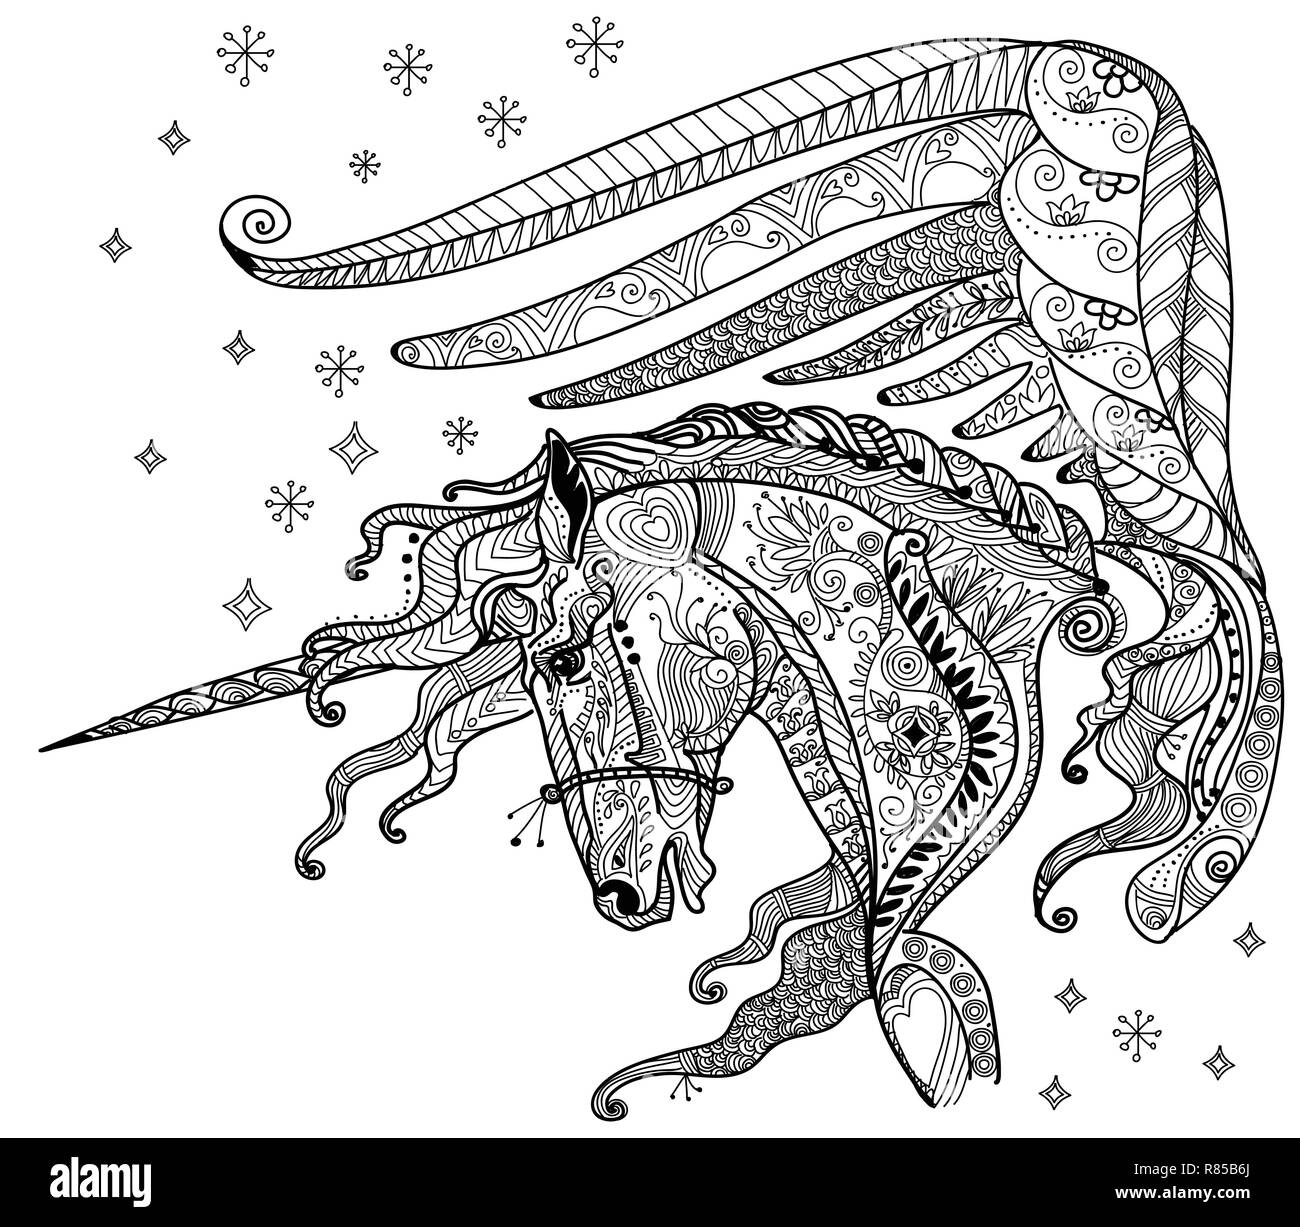 Vettore di disegno a mano illustrazione zentangle unicorn in colore nero isolato su sfondo bianco. Doodle unicorn illustrazione. La colorazione di fantasia Unicorn Illustrazione Vettoriale